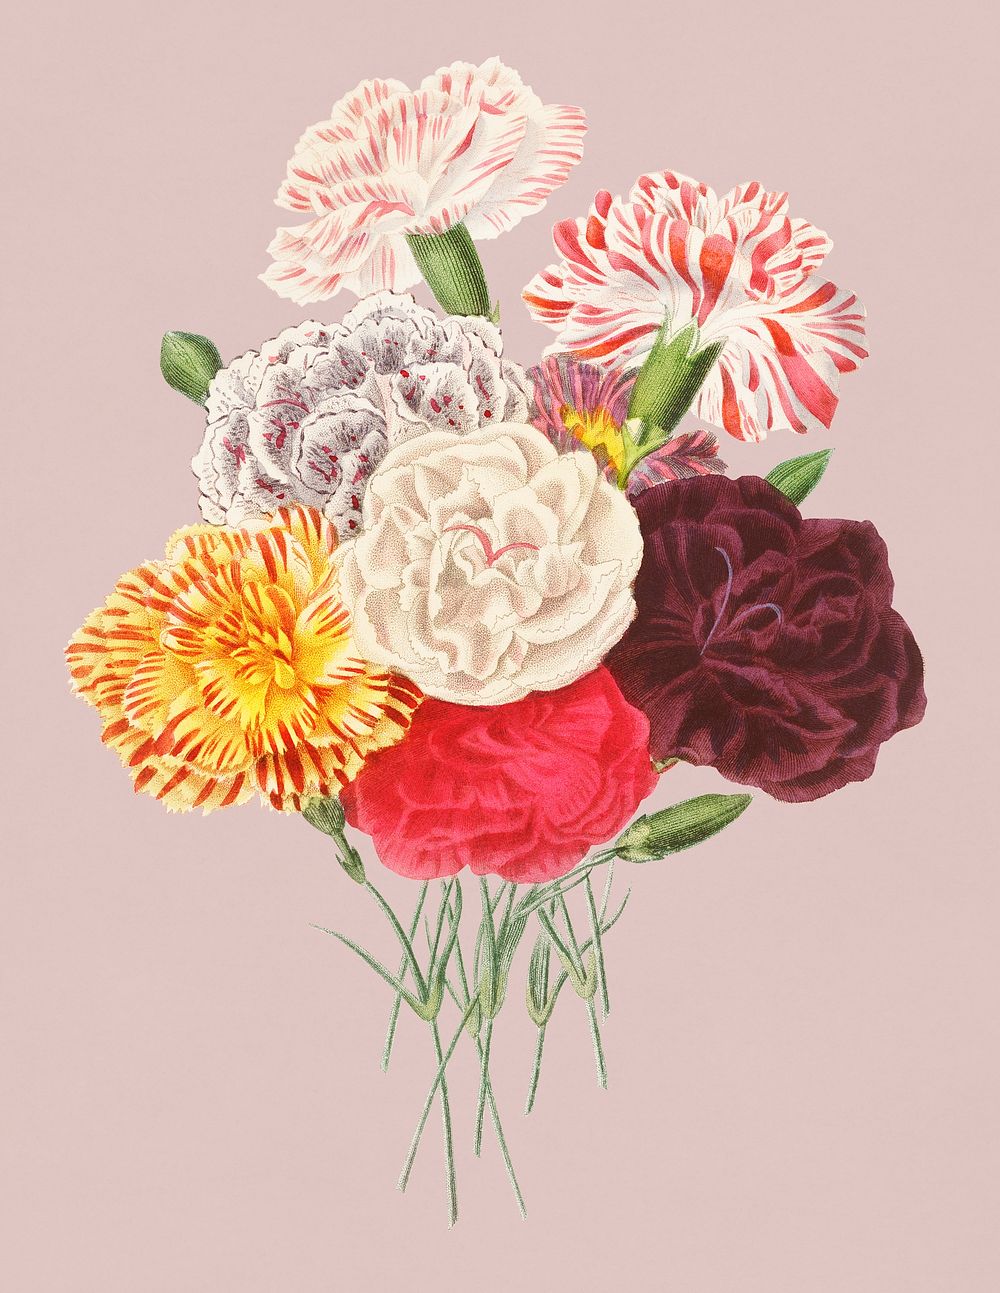 Vintage Illustration of Carnation.